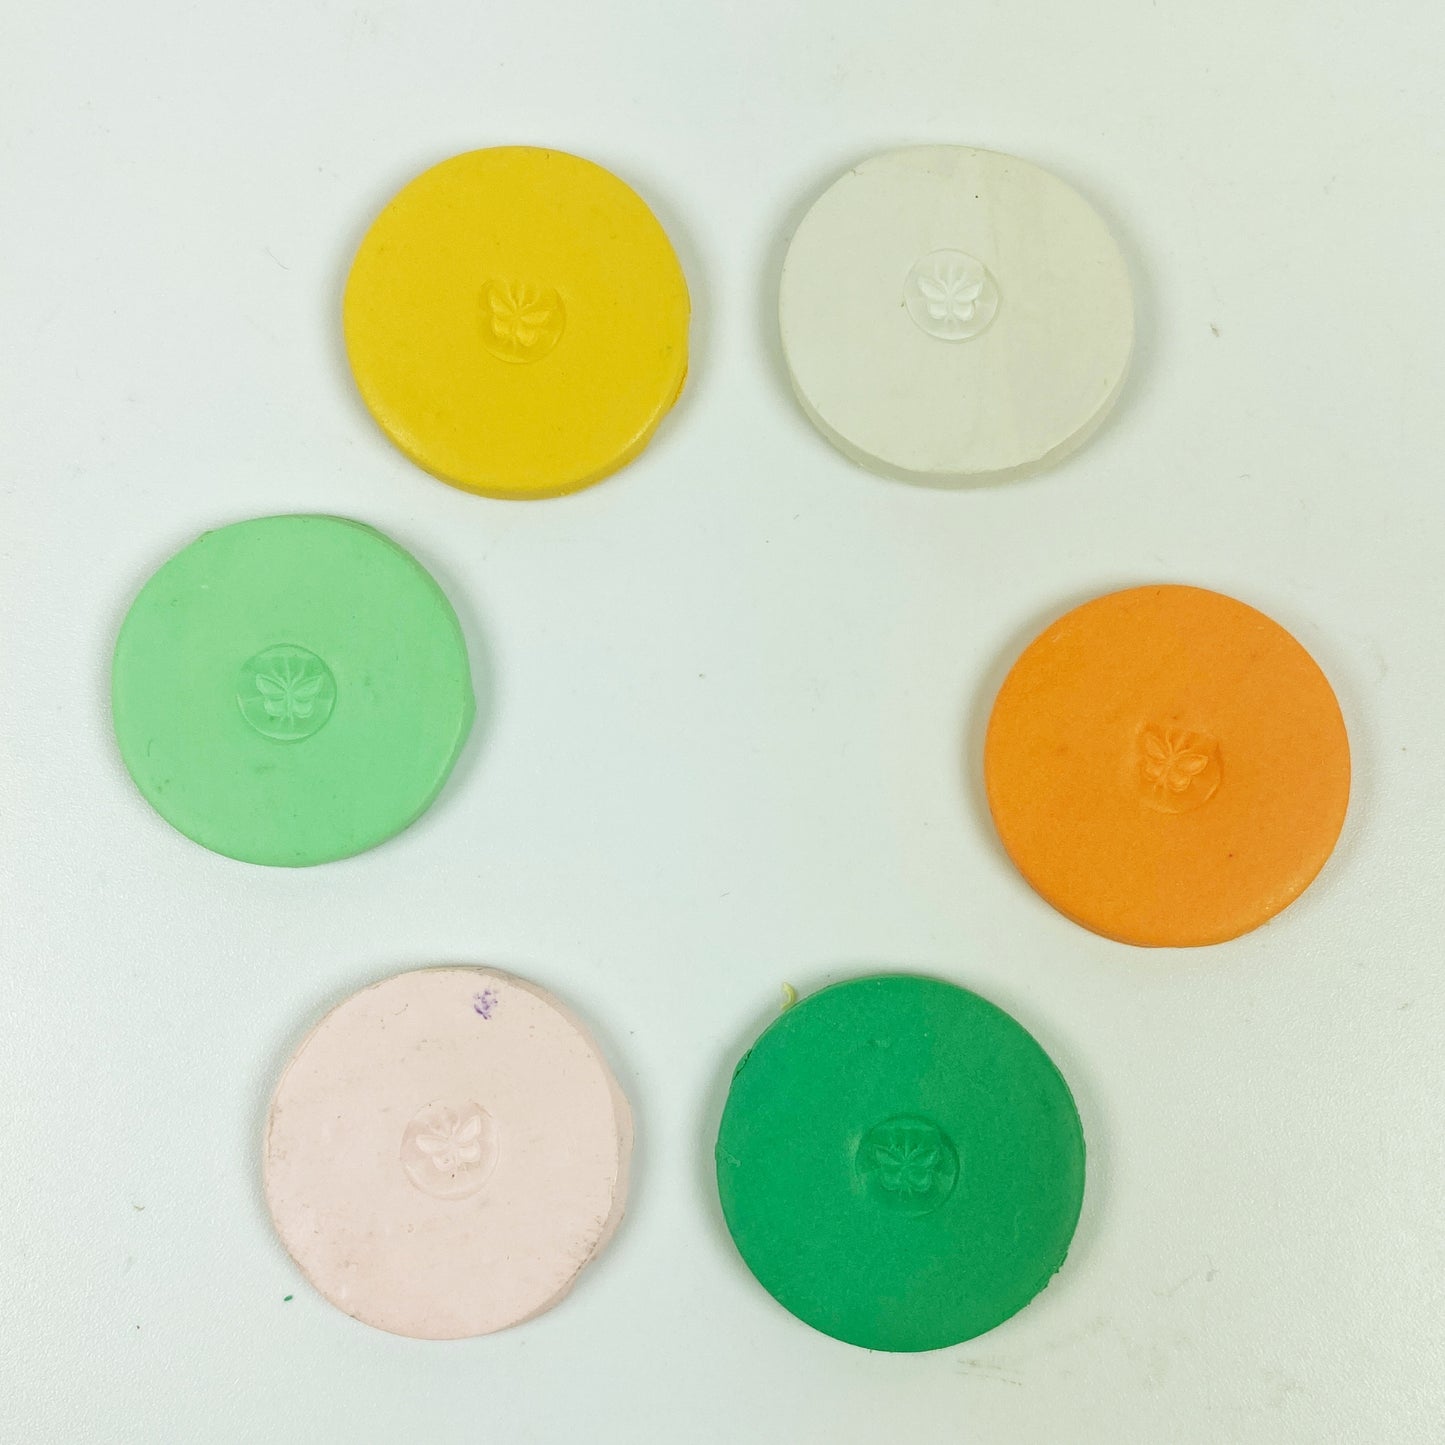 Orange Grove Palette sample discs in a circle